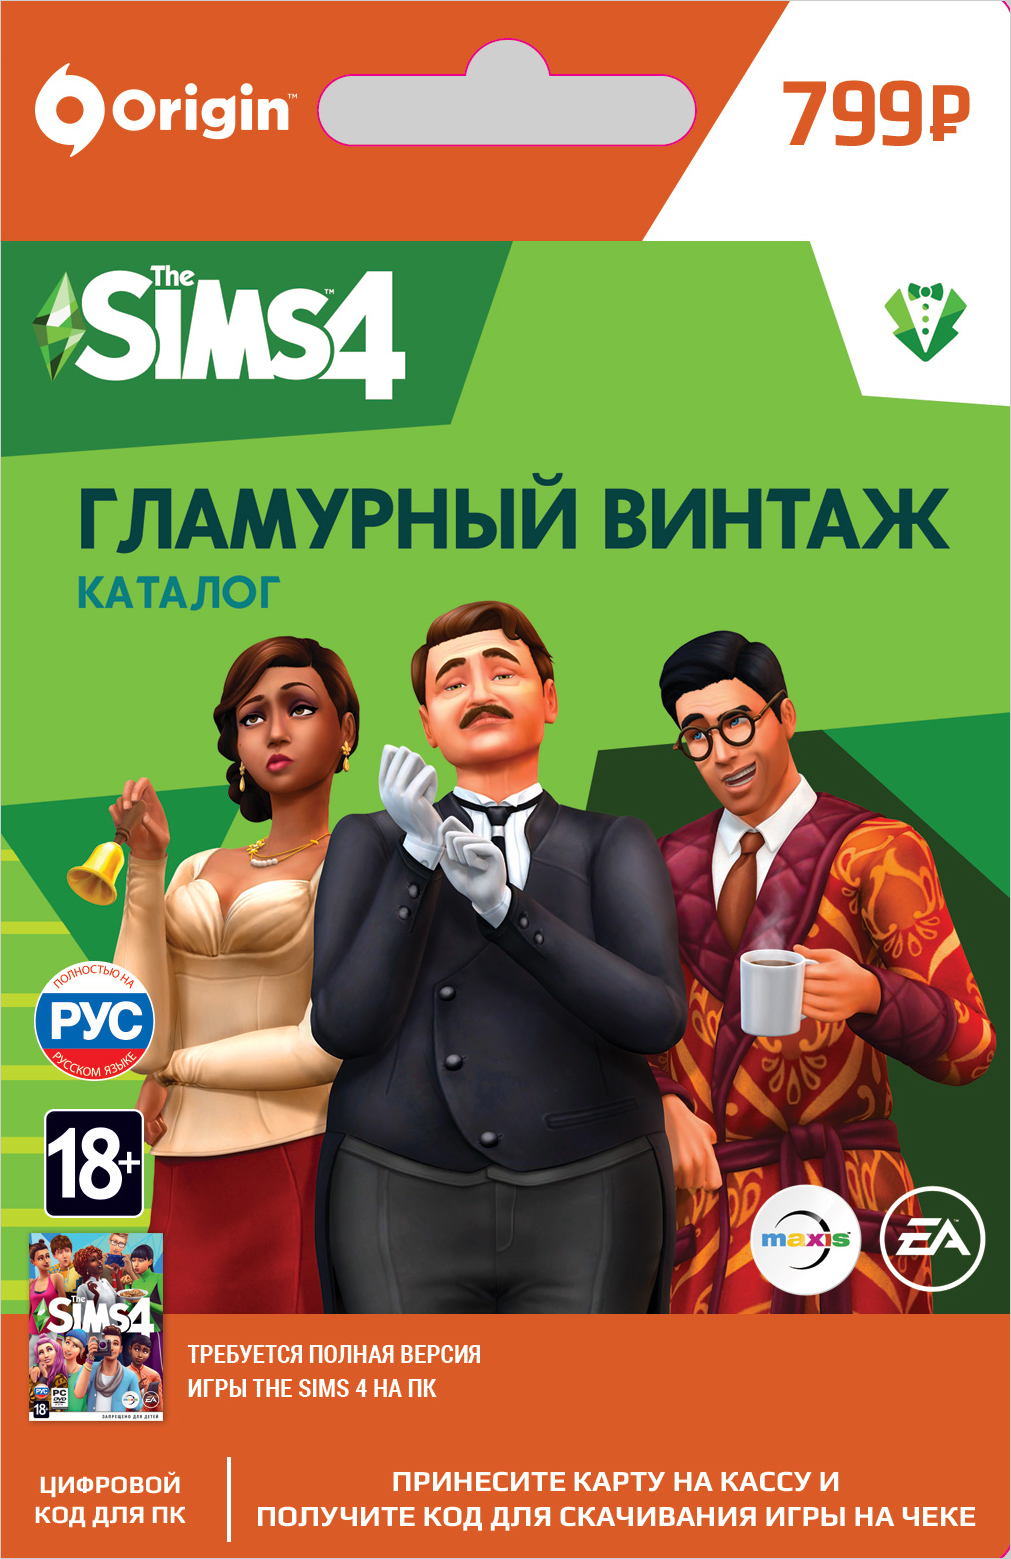 The Sims 4 Гламурный винтаж. Каталог [PC, Цифровая версия] (Цифровая версия)